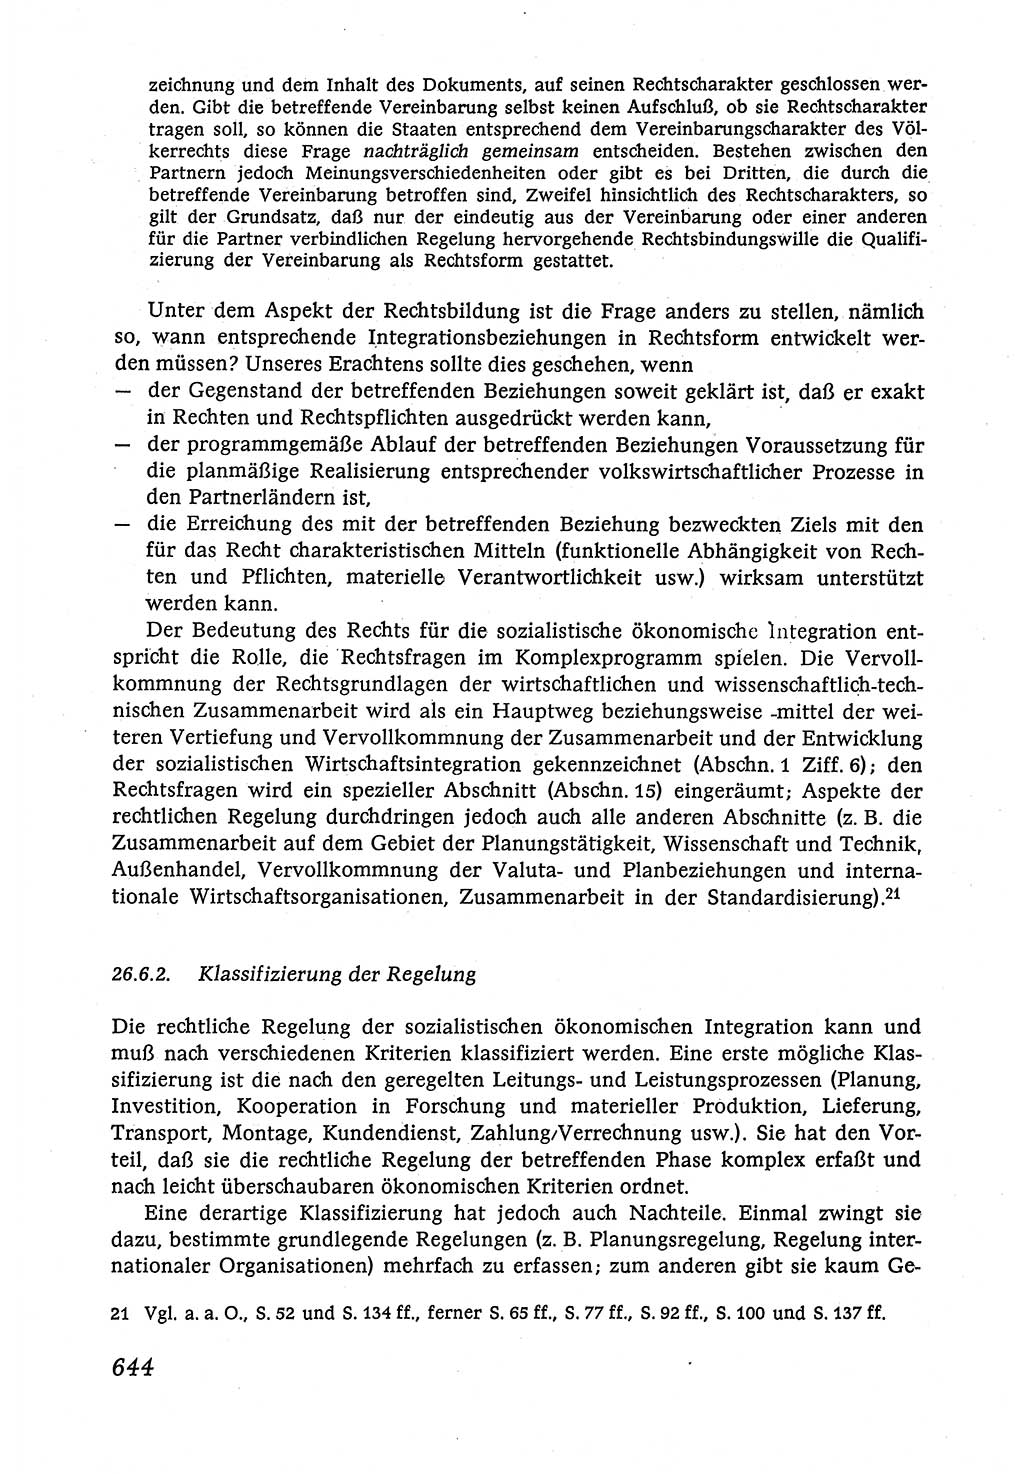 Marxistisch-leninistische (ML) Staats- und Rechtstheorie [Deutsche Demokratische Republik (DDR)], Lehrbuch 1980, Seite 644 (ML St.-R.-Th. DDR Lb. 1980, S. 644)